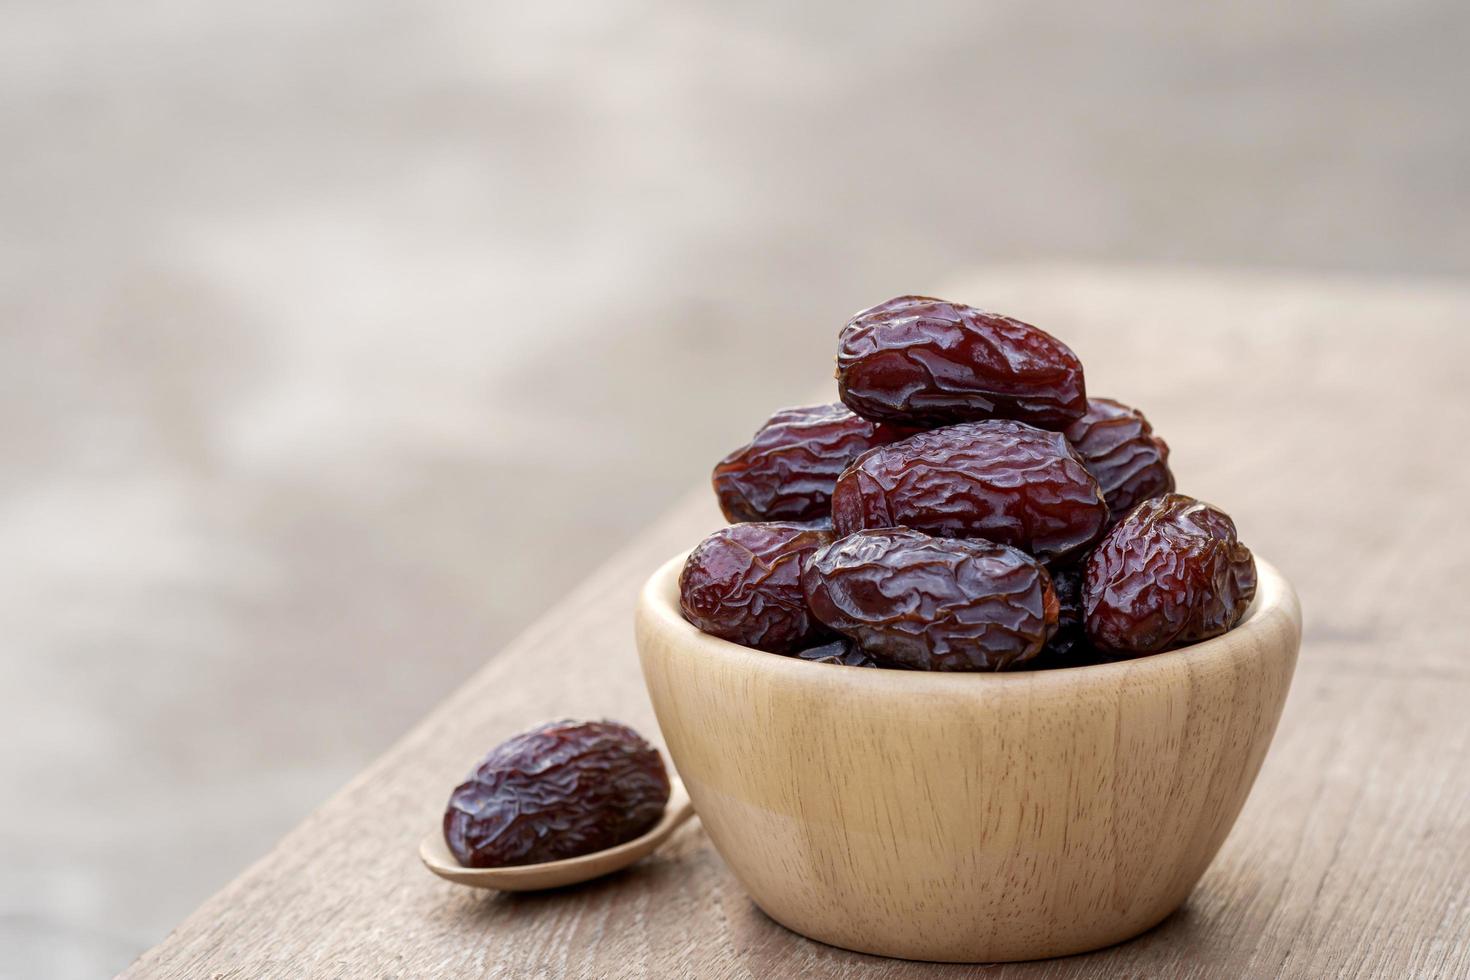 medjool datteri o datteri frutta in ciotola di legno e cucchiaio sul tavolo, questo frutto è altamente nutriente e viene comunemente consumato durante il digiuno o il ramadan. foto